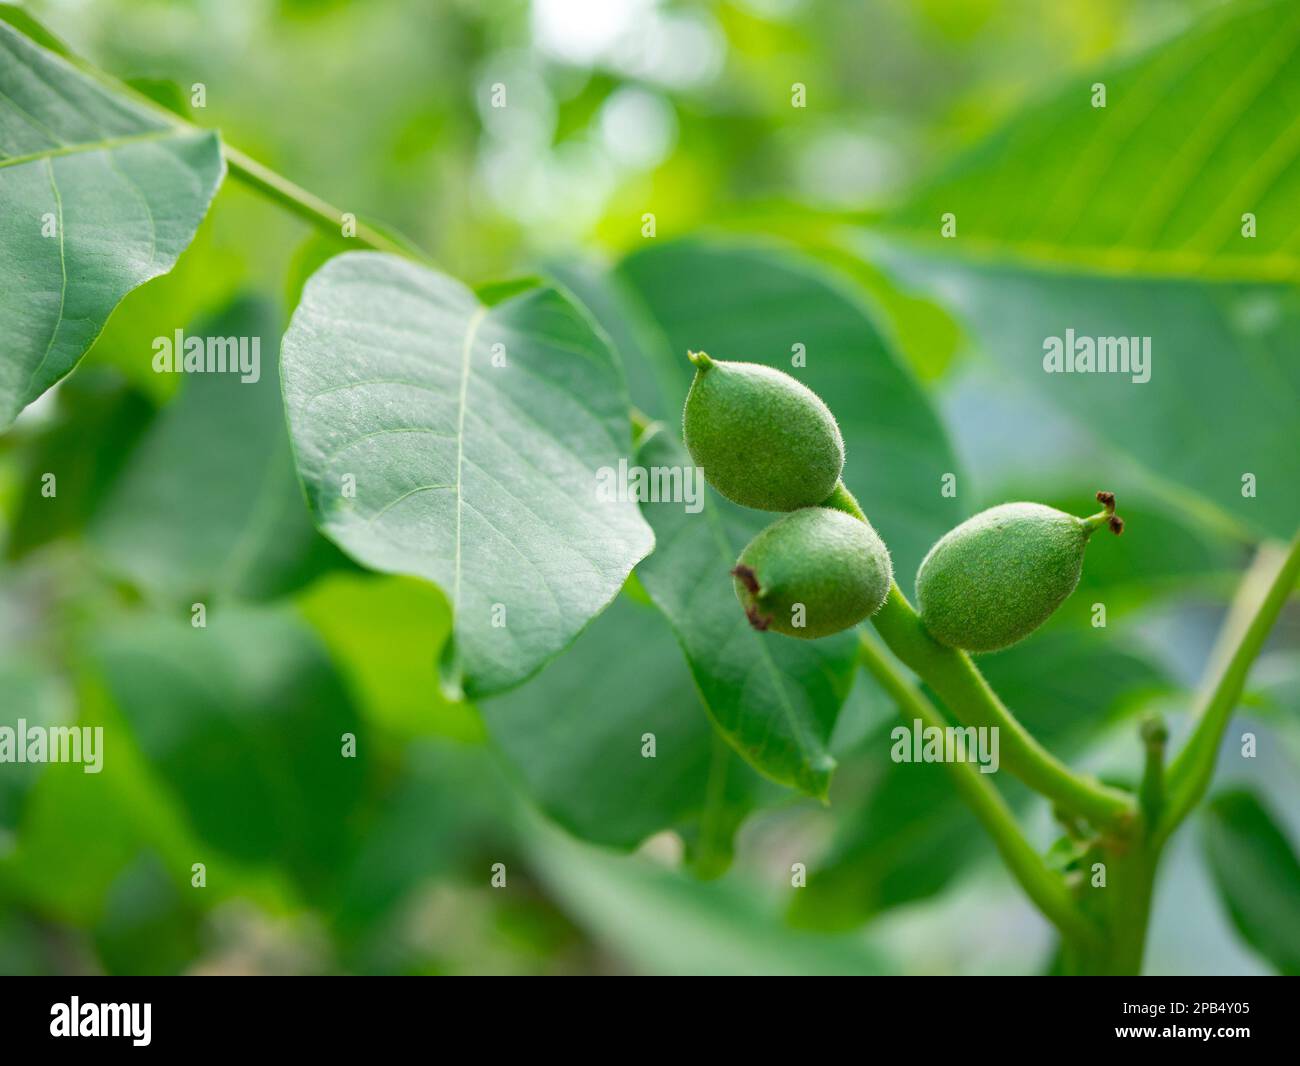 Grüne Ovarialfrüchte von Walnüssen auf einem jungen Baum, selektiver Fokus. Anbau von Nüssen. Juglans regia Stockfoto